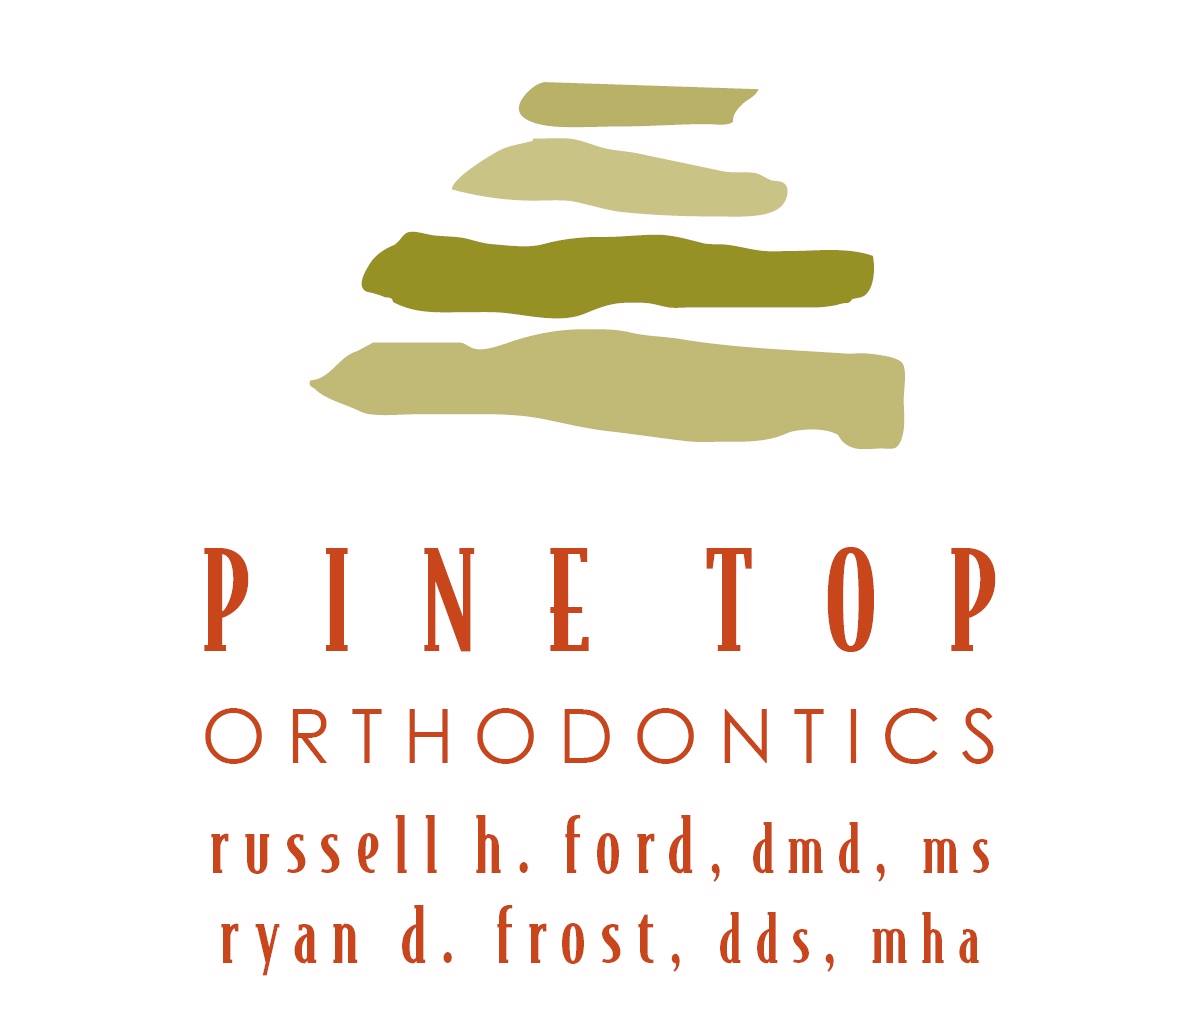 Company logo of Pine Top Orthodontics